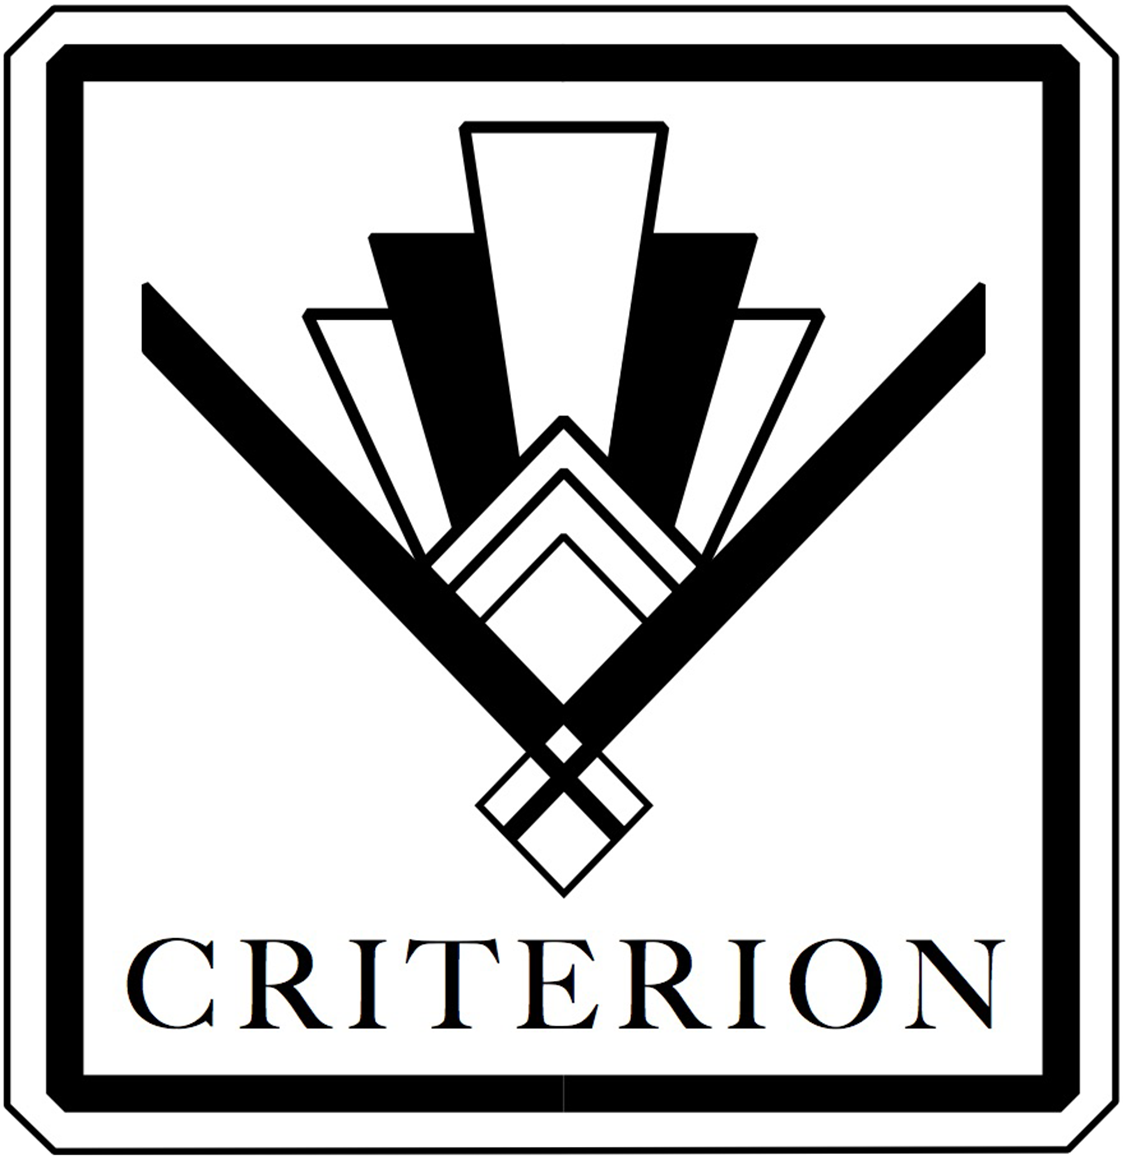 Criterion-Theatre